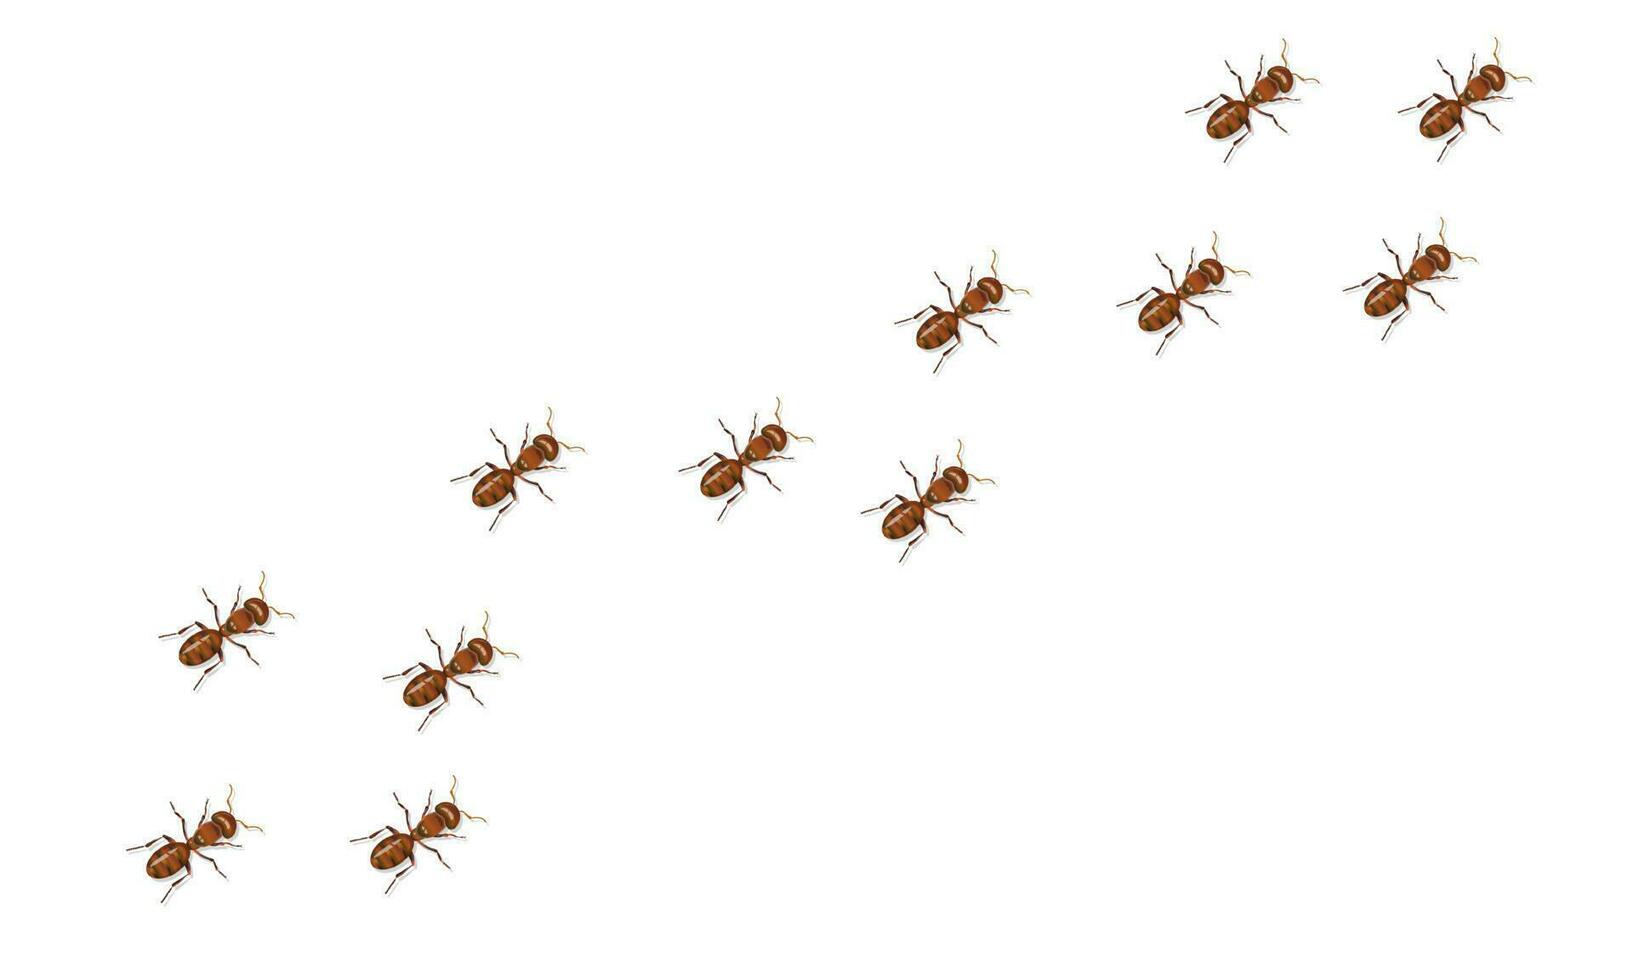 röd myror spår rör på sig diagonalt isolerat på vit bakgrund. realistisk vektor illustration.